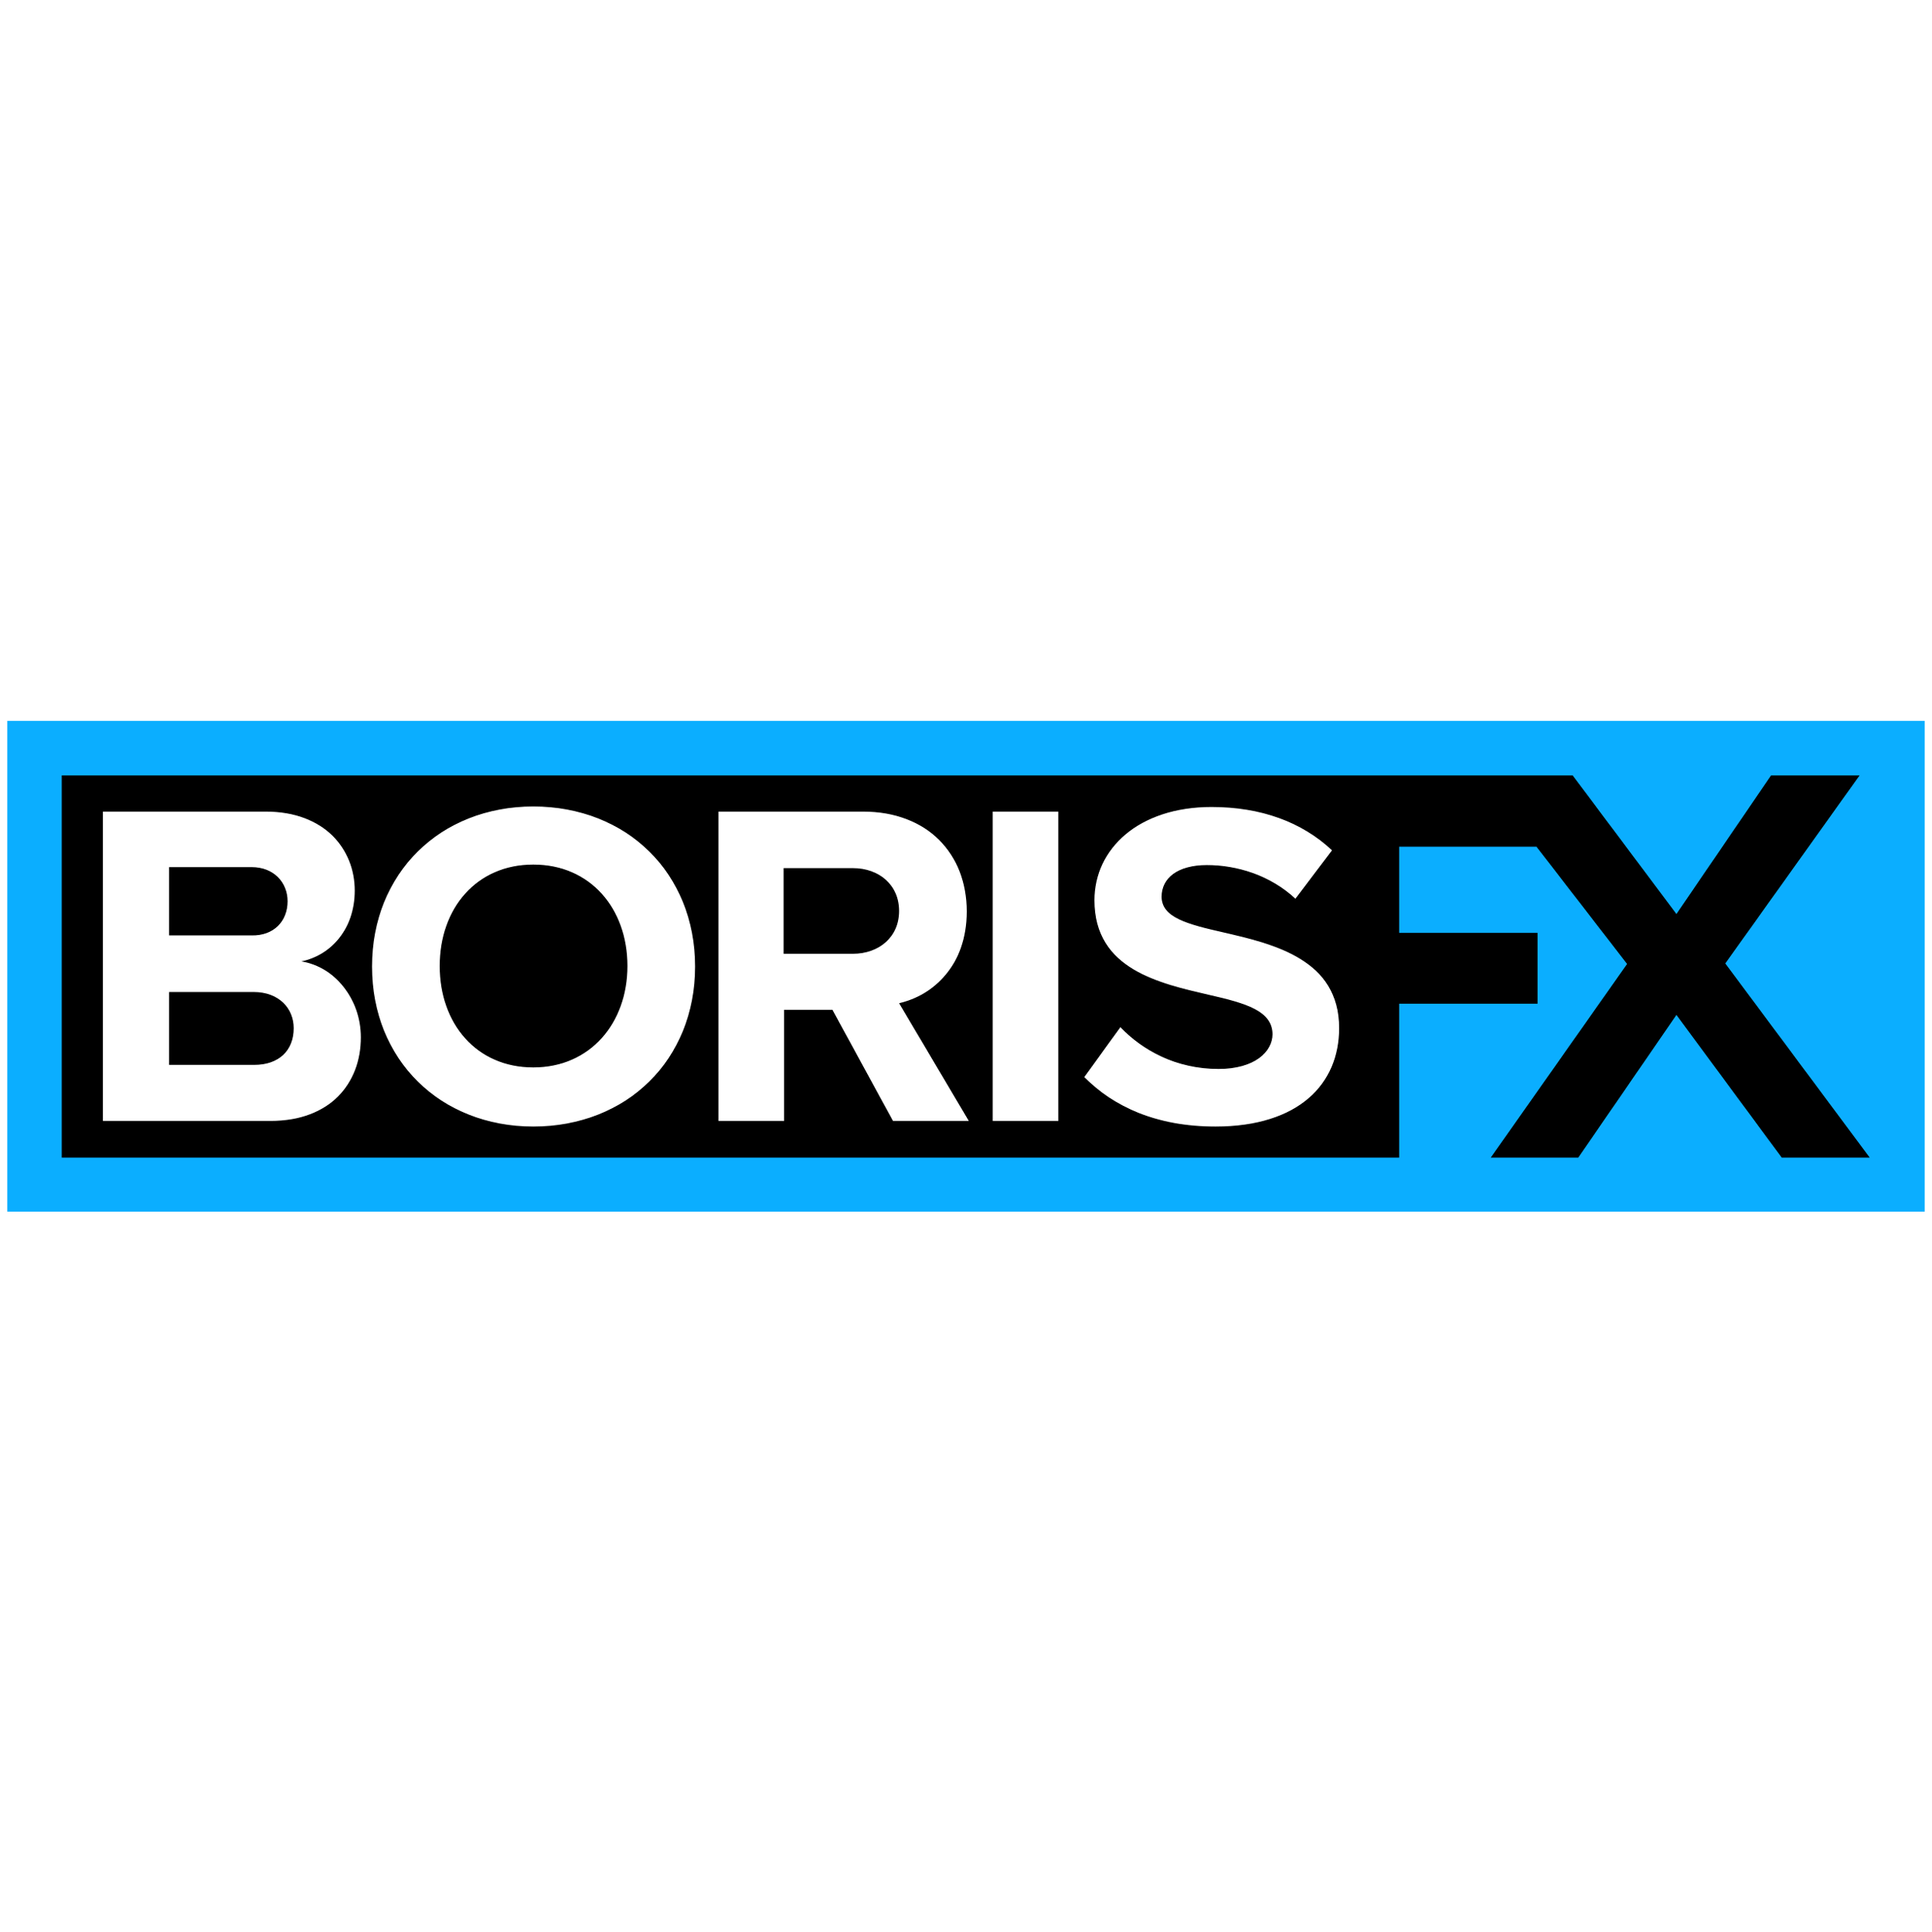 Borisfx Logo  Transparent Image